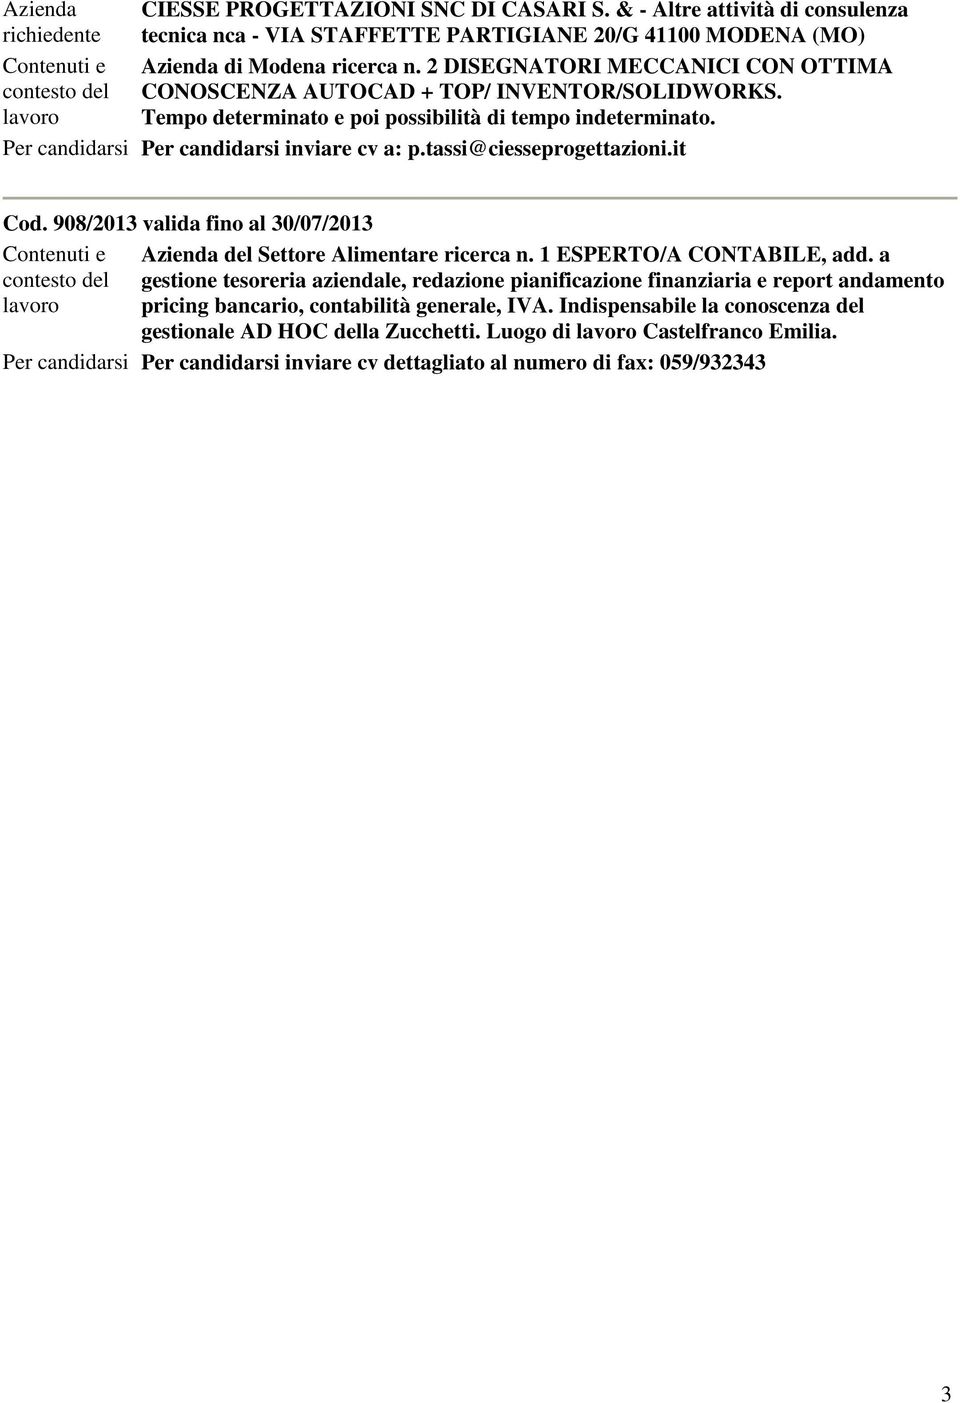 tassi@ciesseprogettazioni.it Cod. 908/2013 valida fino al 30/07/2013 Contenuti e Azienda del Settore Alimentare ricerca n. 1 ESPERTO/A CONTABILE, add.